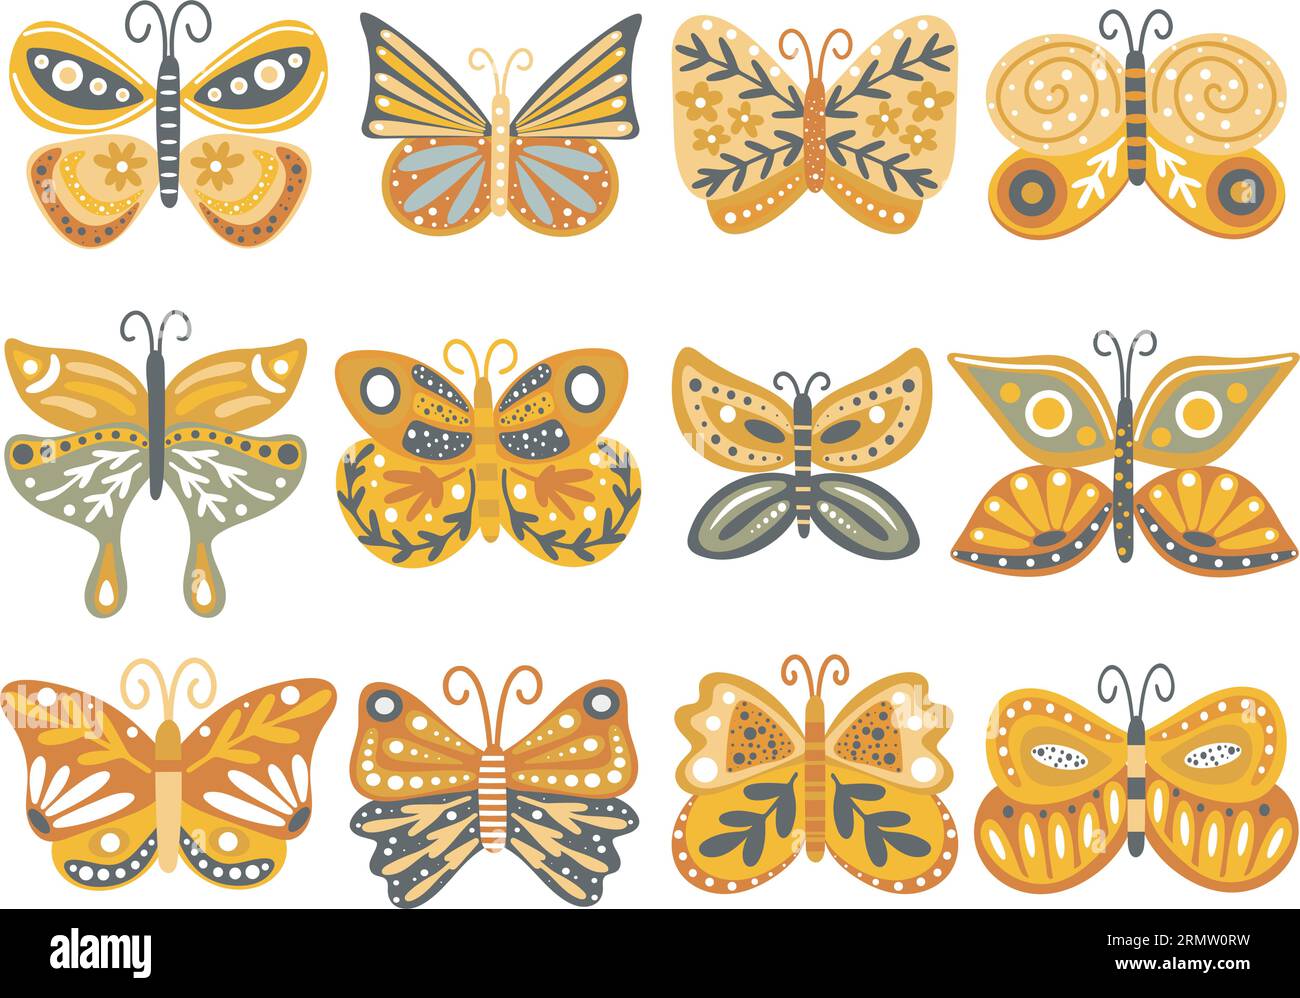 Herbst Schmetterling handgezeichnetes Set Stock Vektor